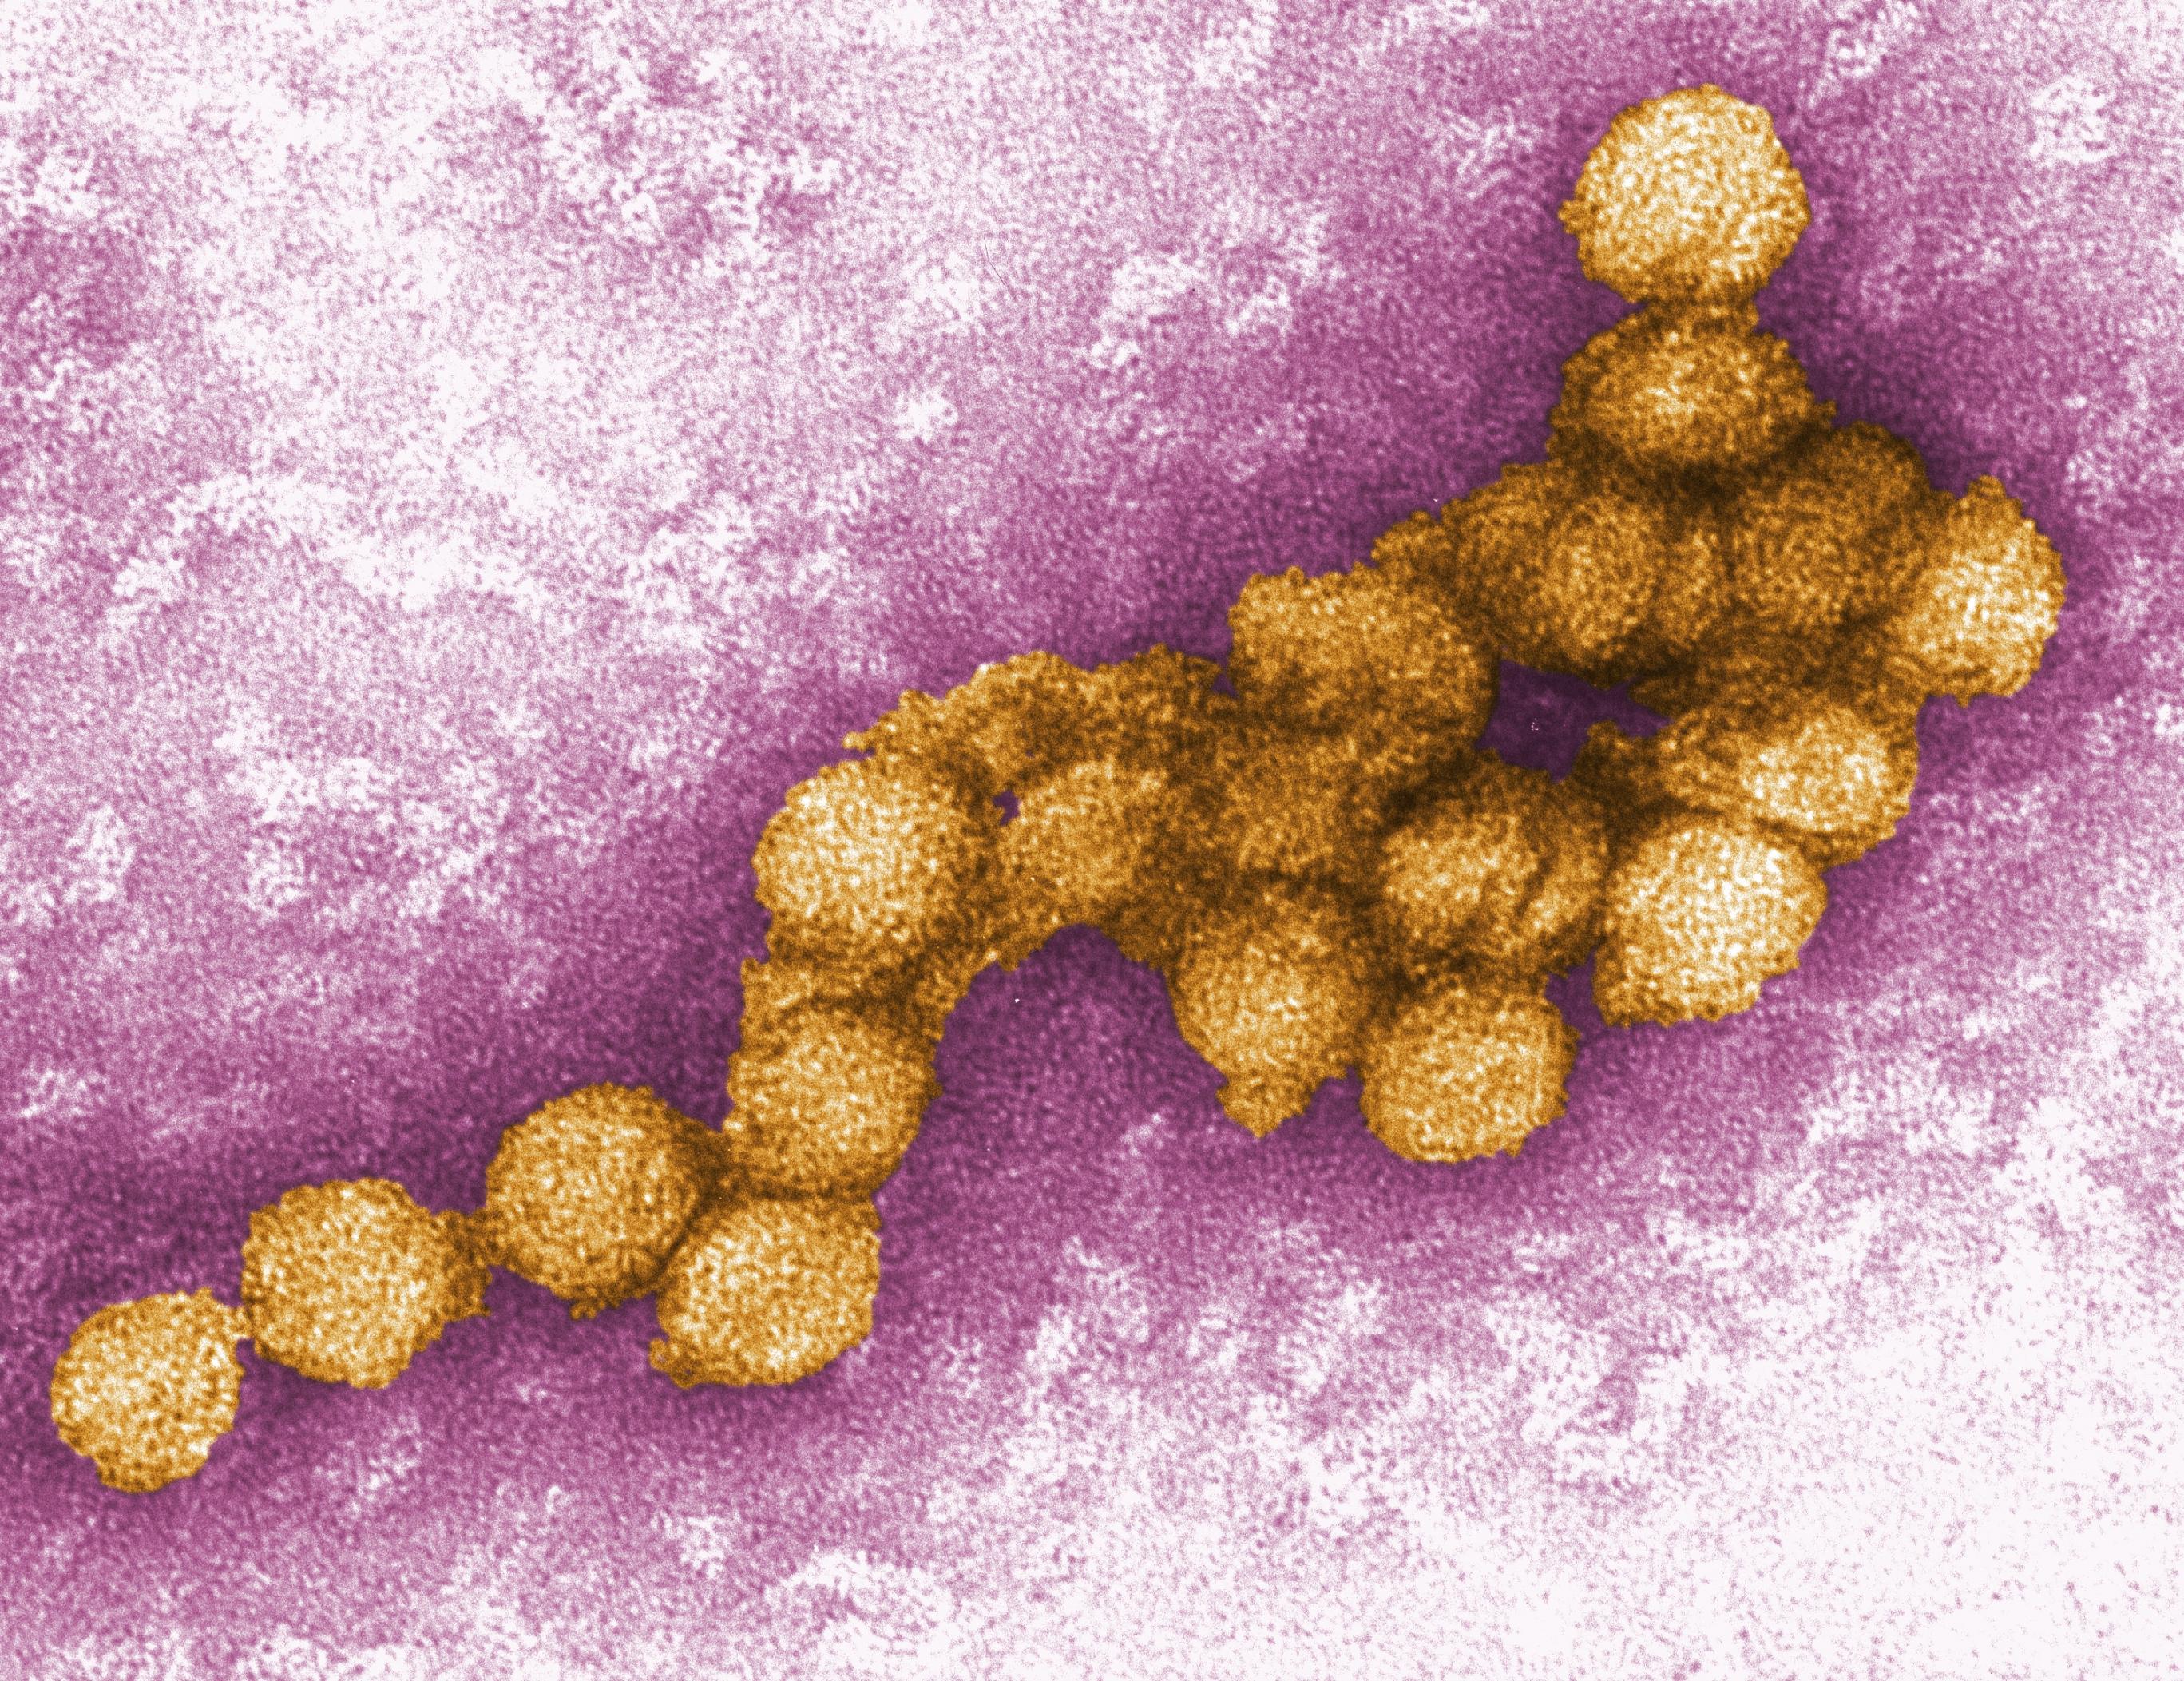 Foto zeit eine elekotronenmikroskopische Aufnahme eines West-Nil-Virus.